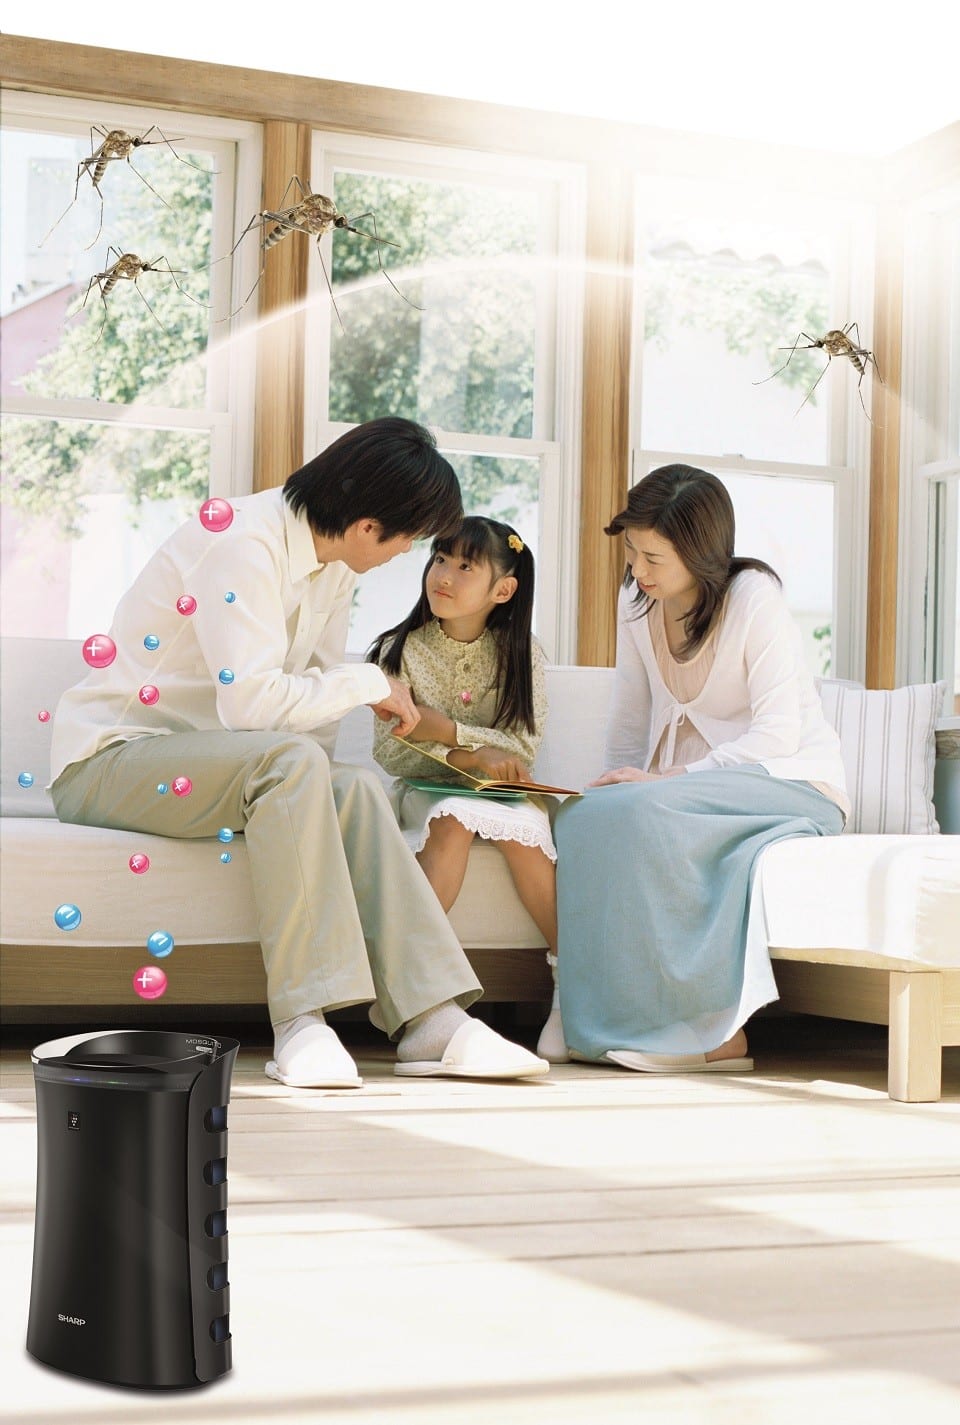  ứng dụng máy lọc không khí trong gia đình 